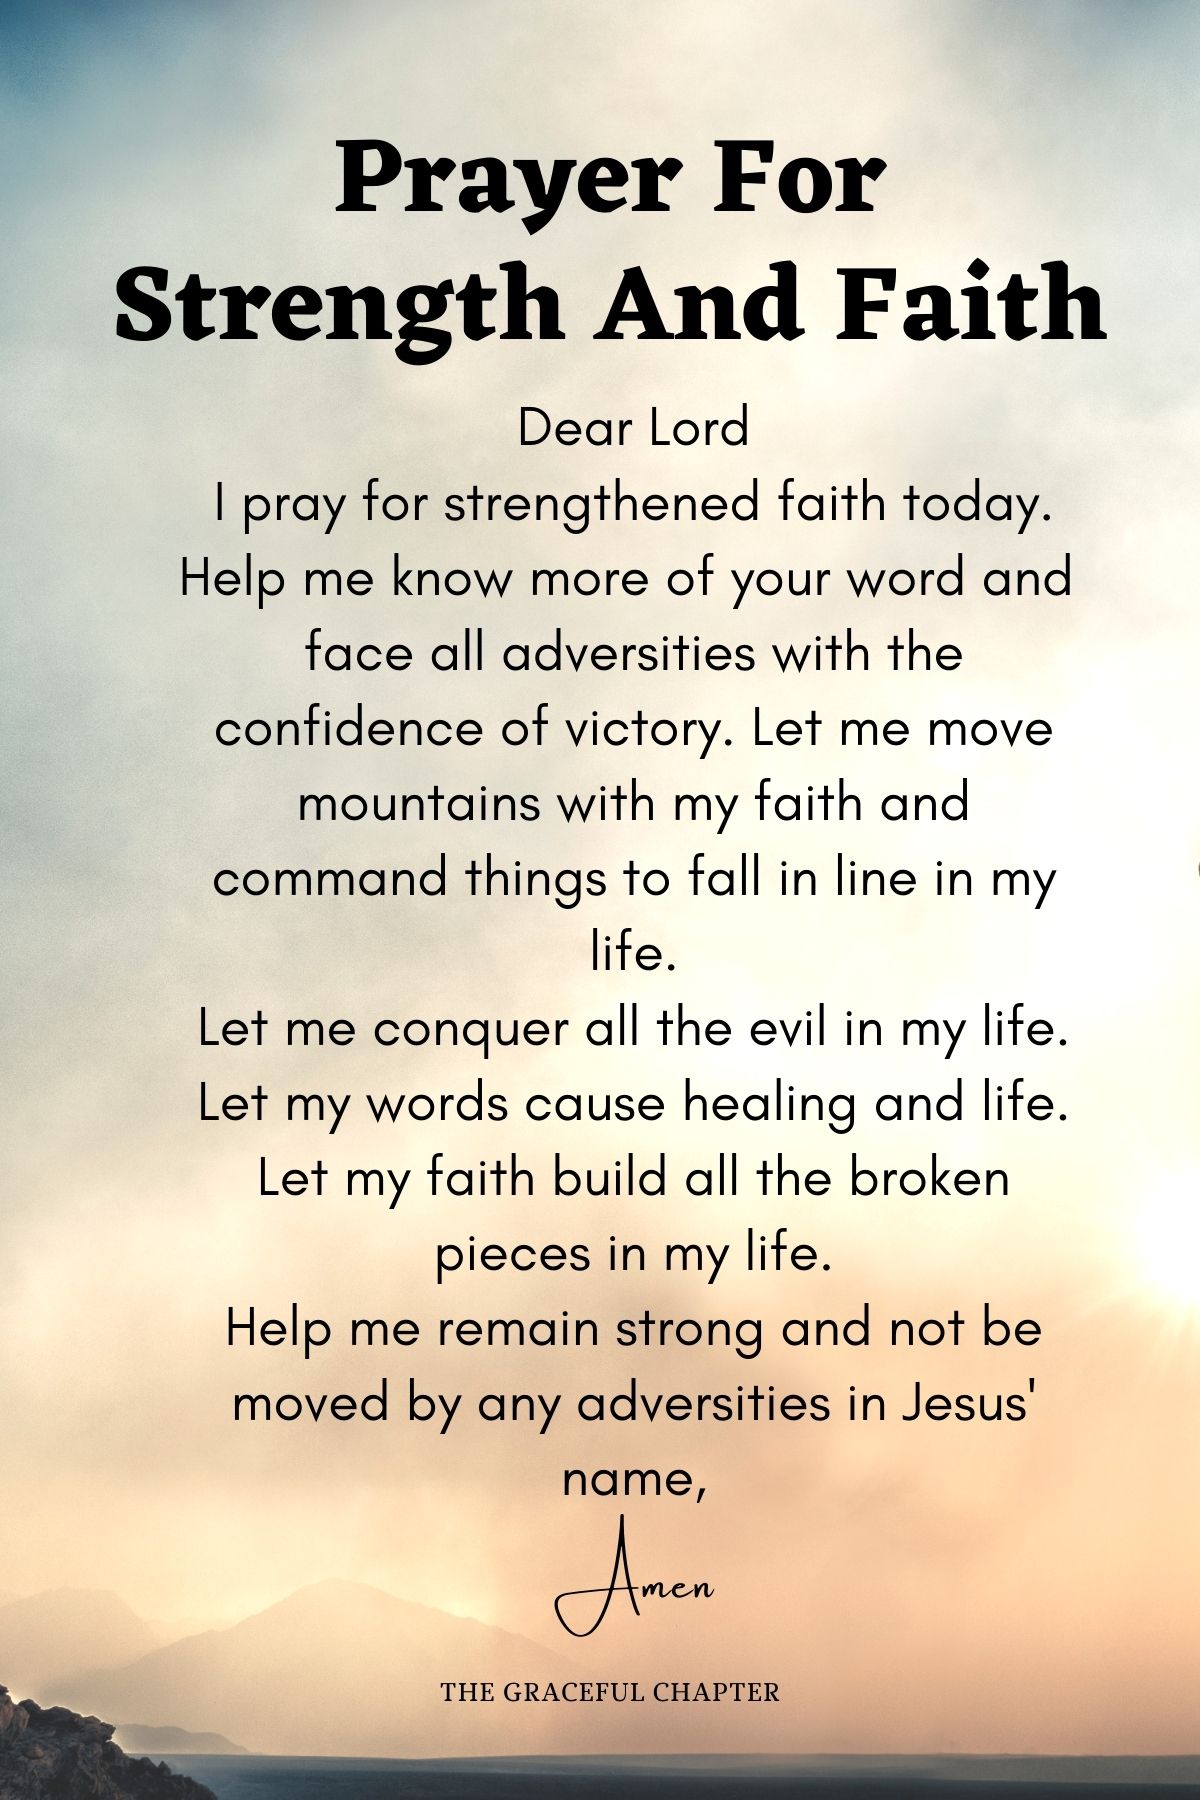 Prayer for strength and faith